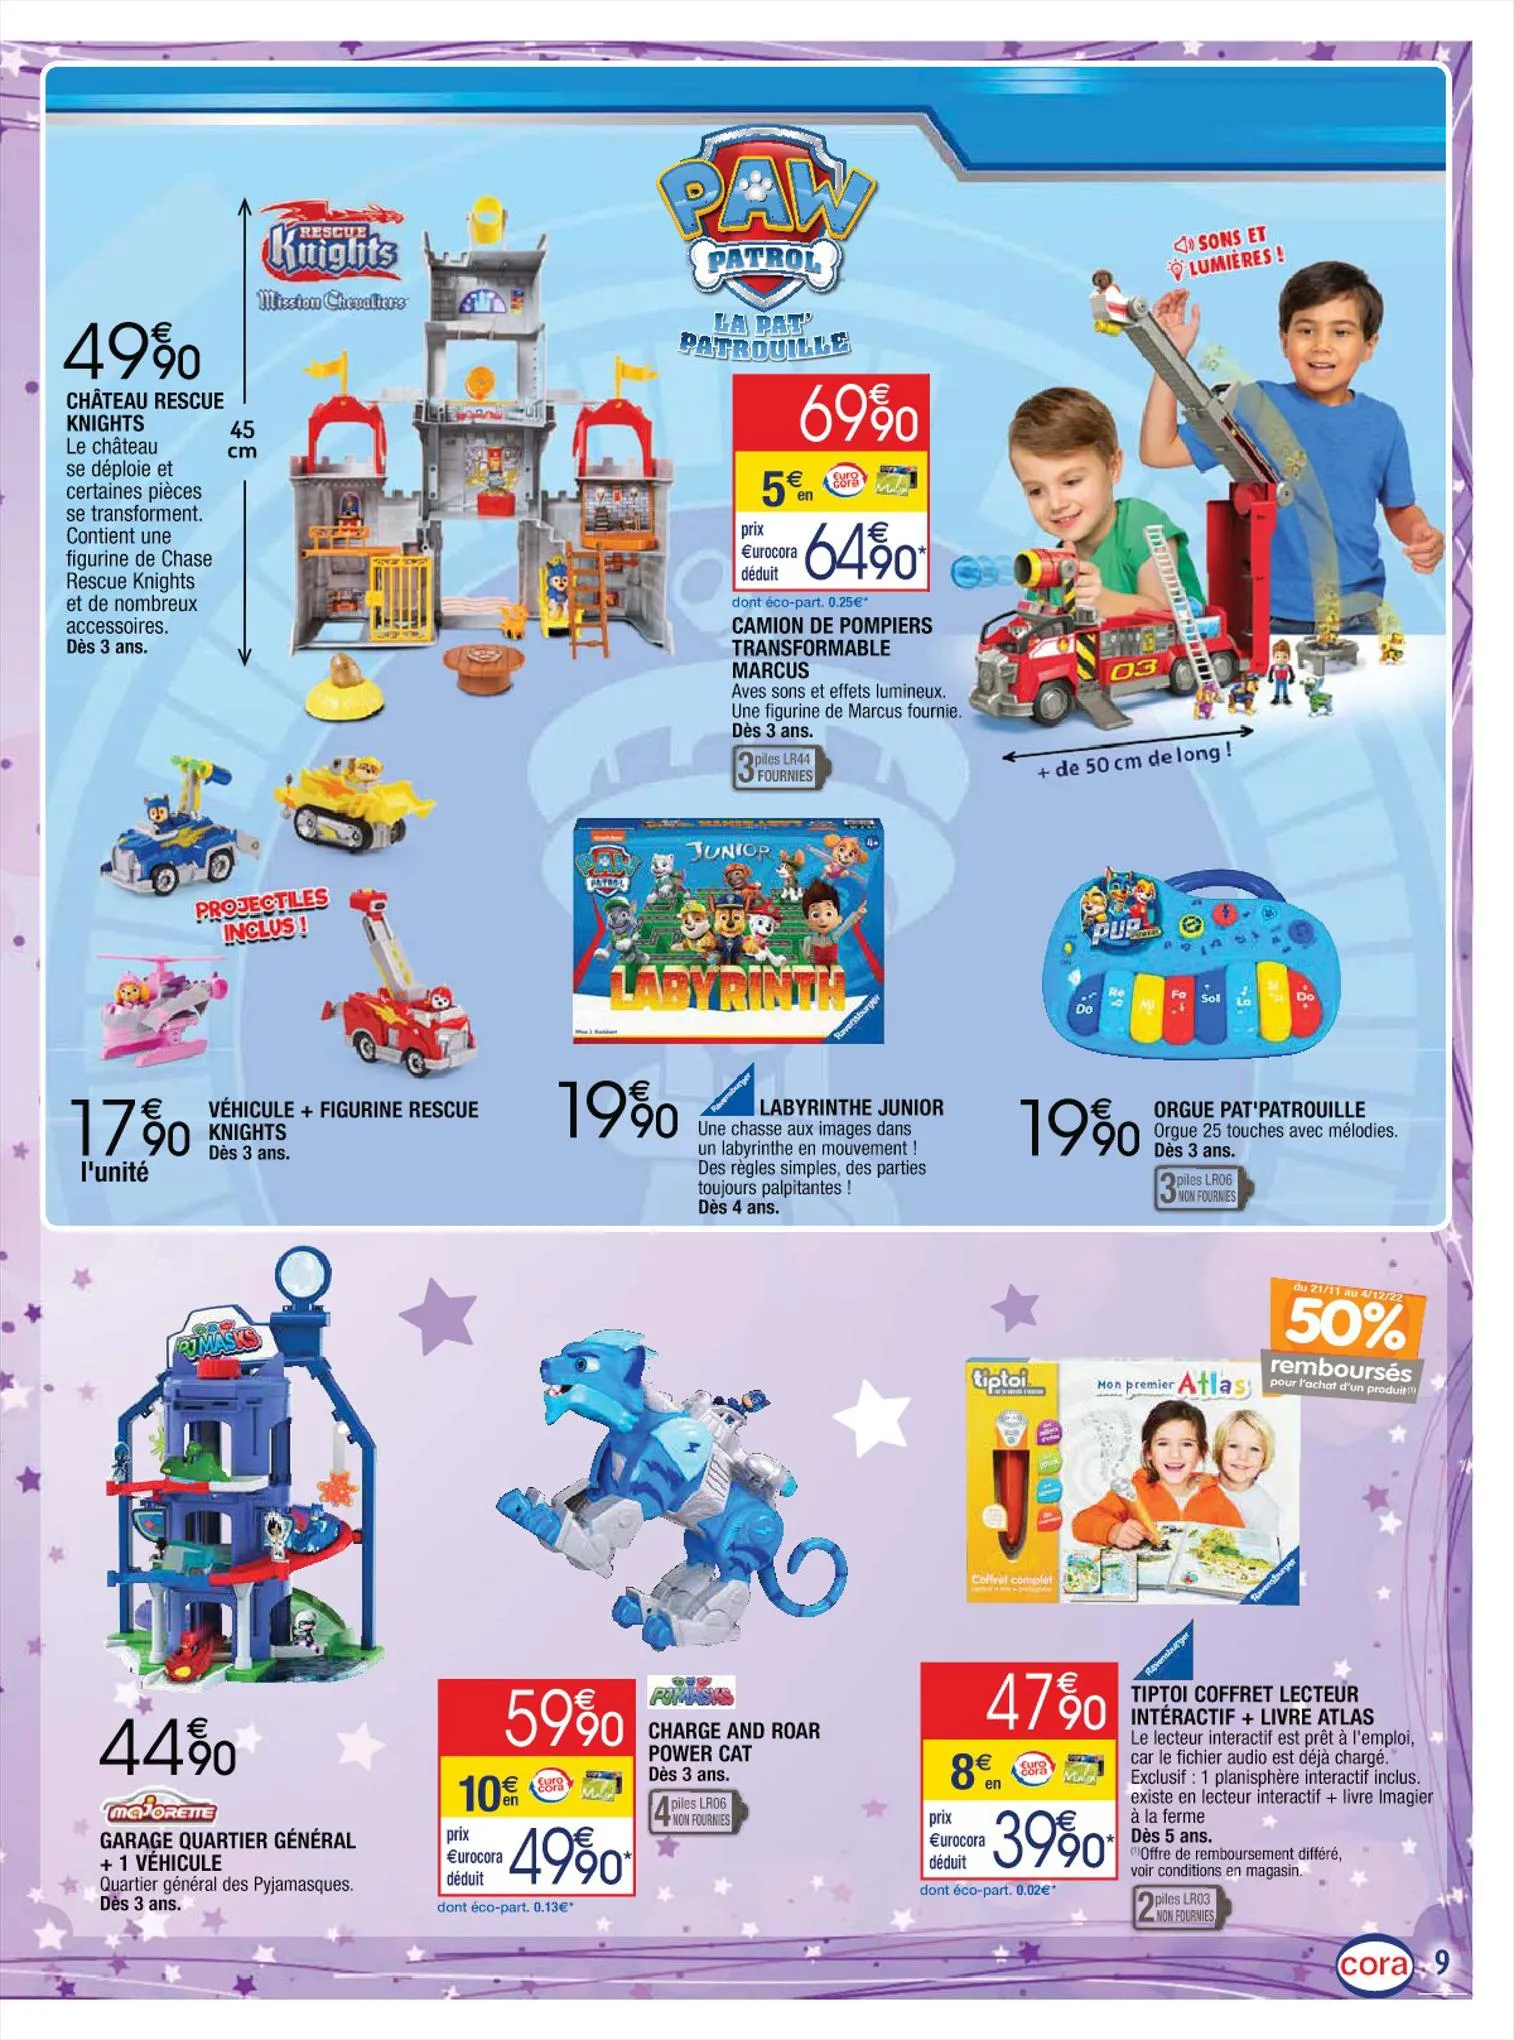 Catalogue Les jouets enchantés, page 00009